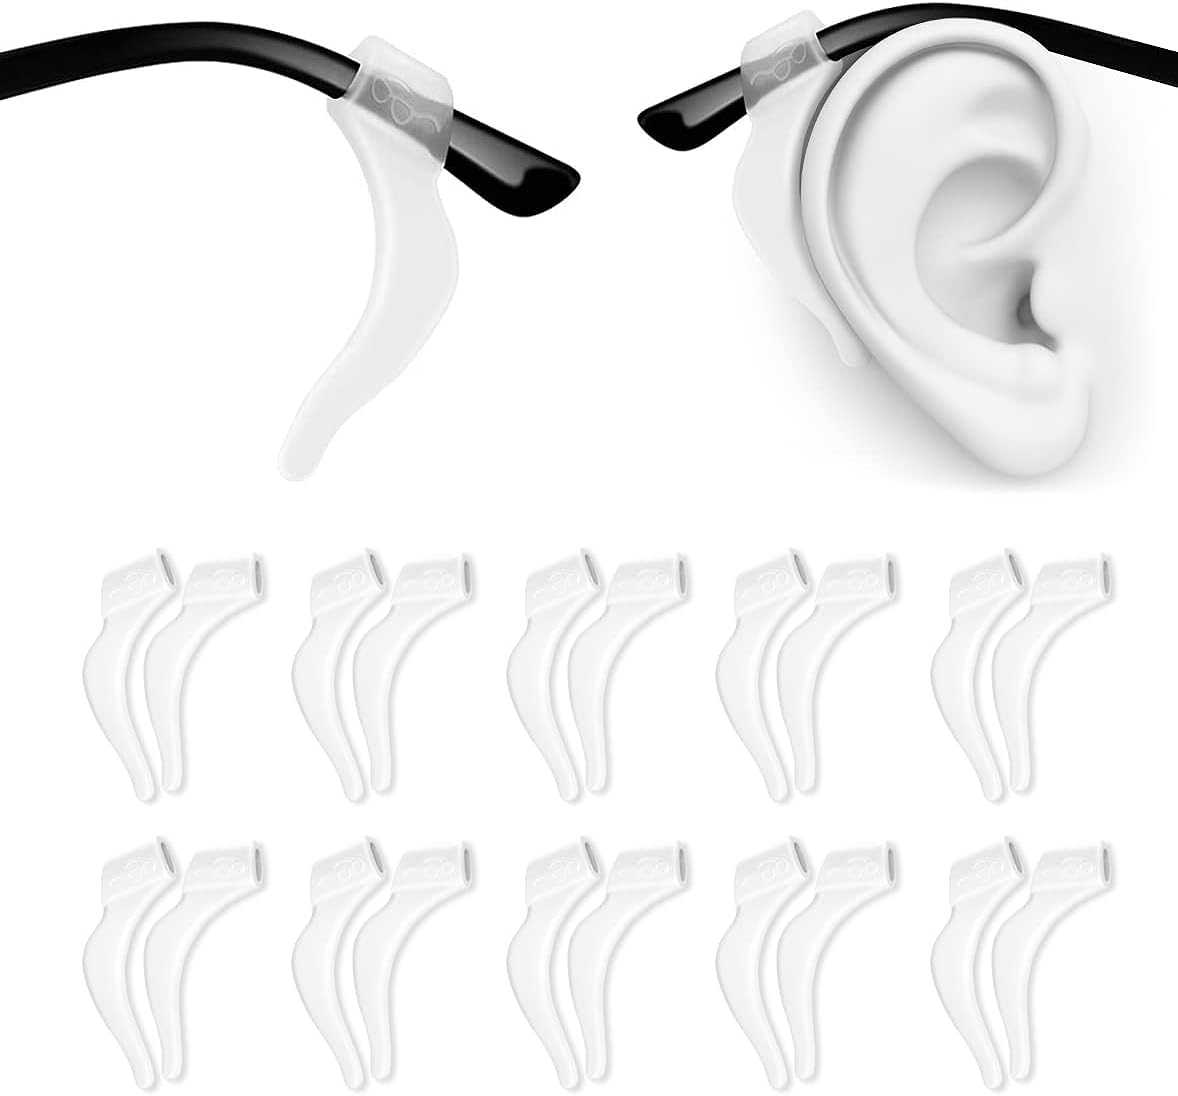 PTSLKHN Soft Silicone Eyeglass Ear Hooks, 10 Pairs of Non-Slip Eyeglasses Ear Grips for Glasses, Sunglasses, Reading Glasses